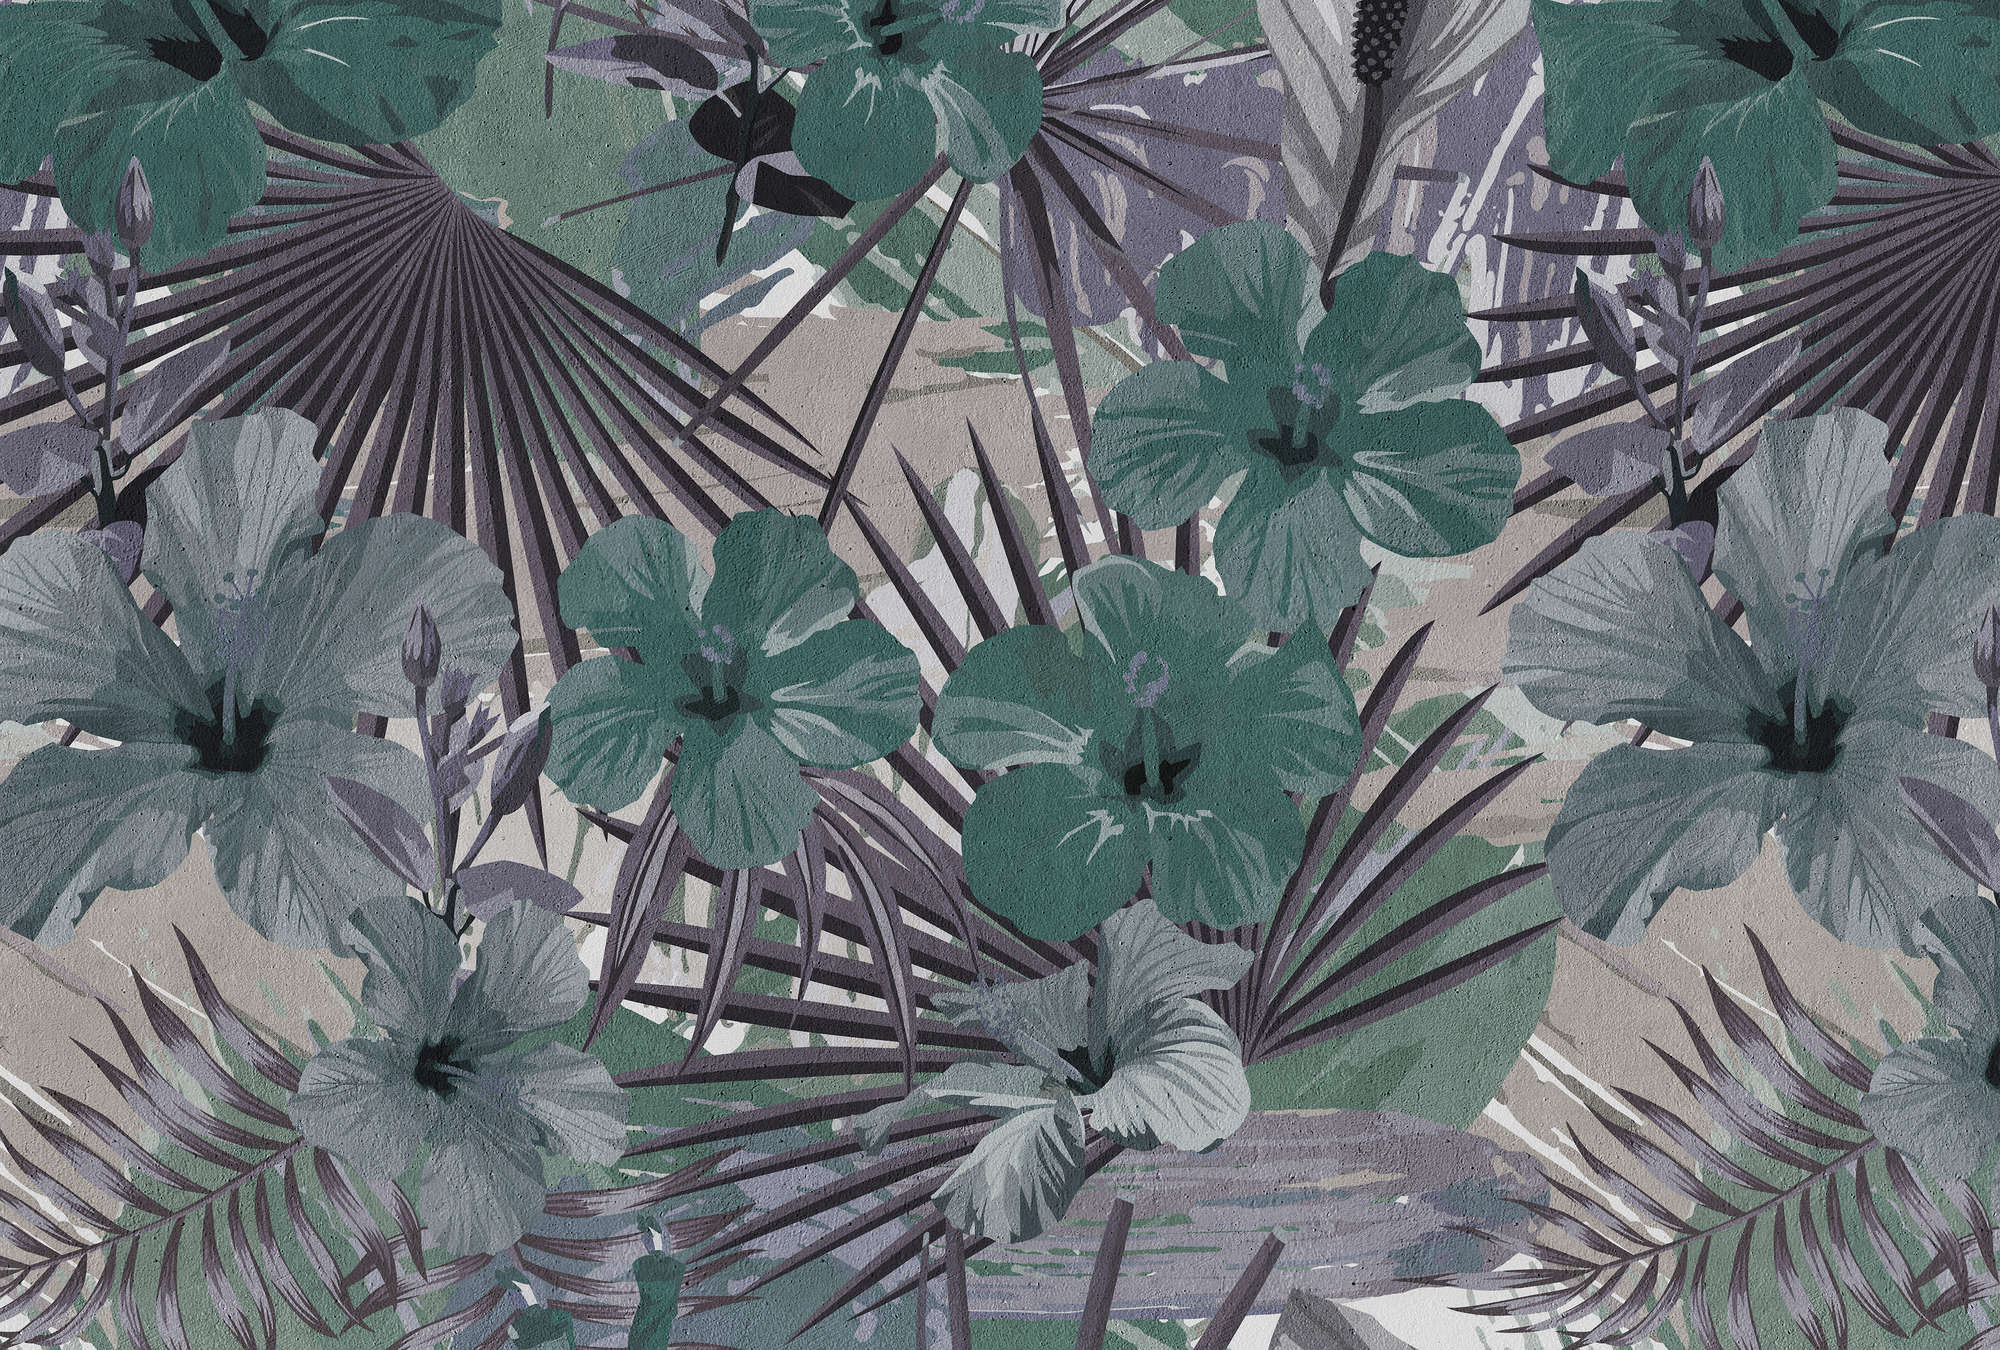             Fototapete Dschungel Palmen und Blume – Grün, Lila
        